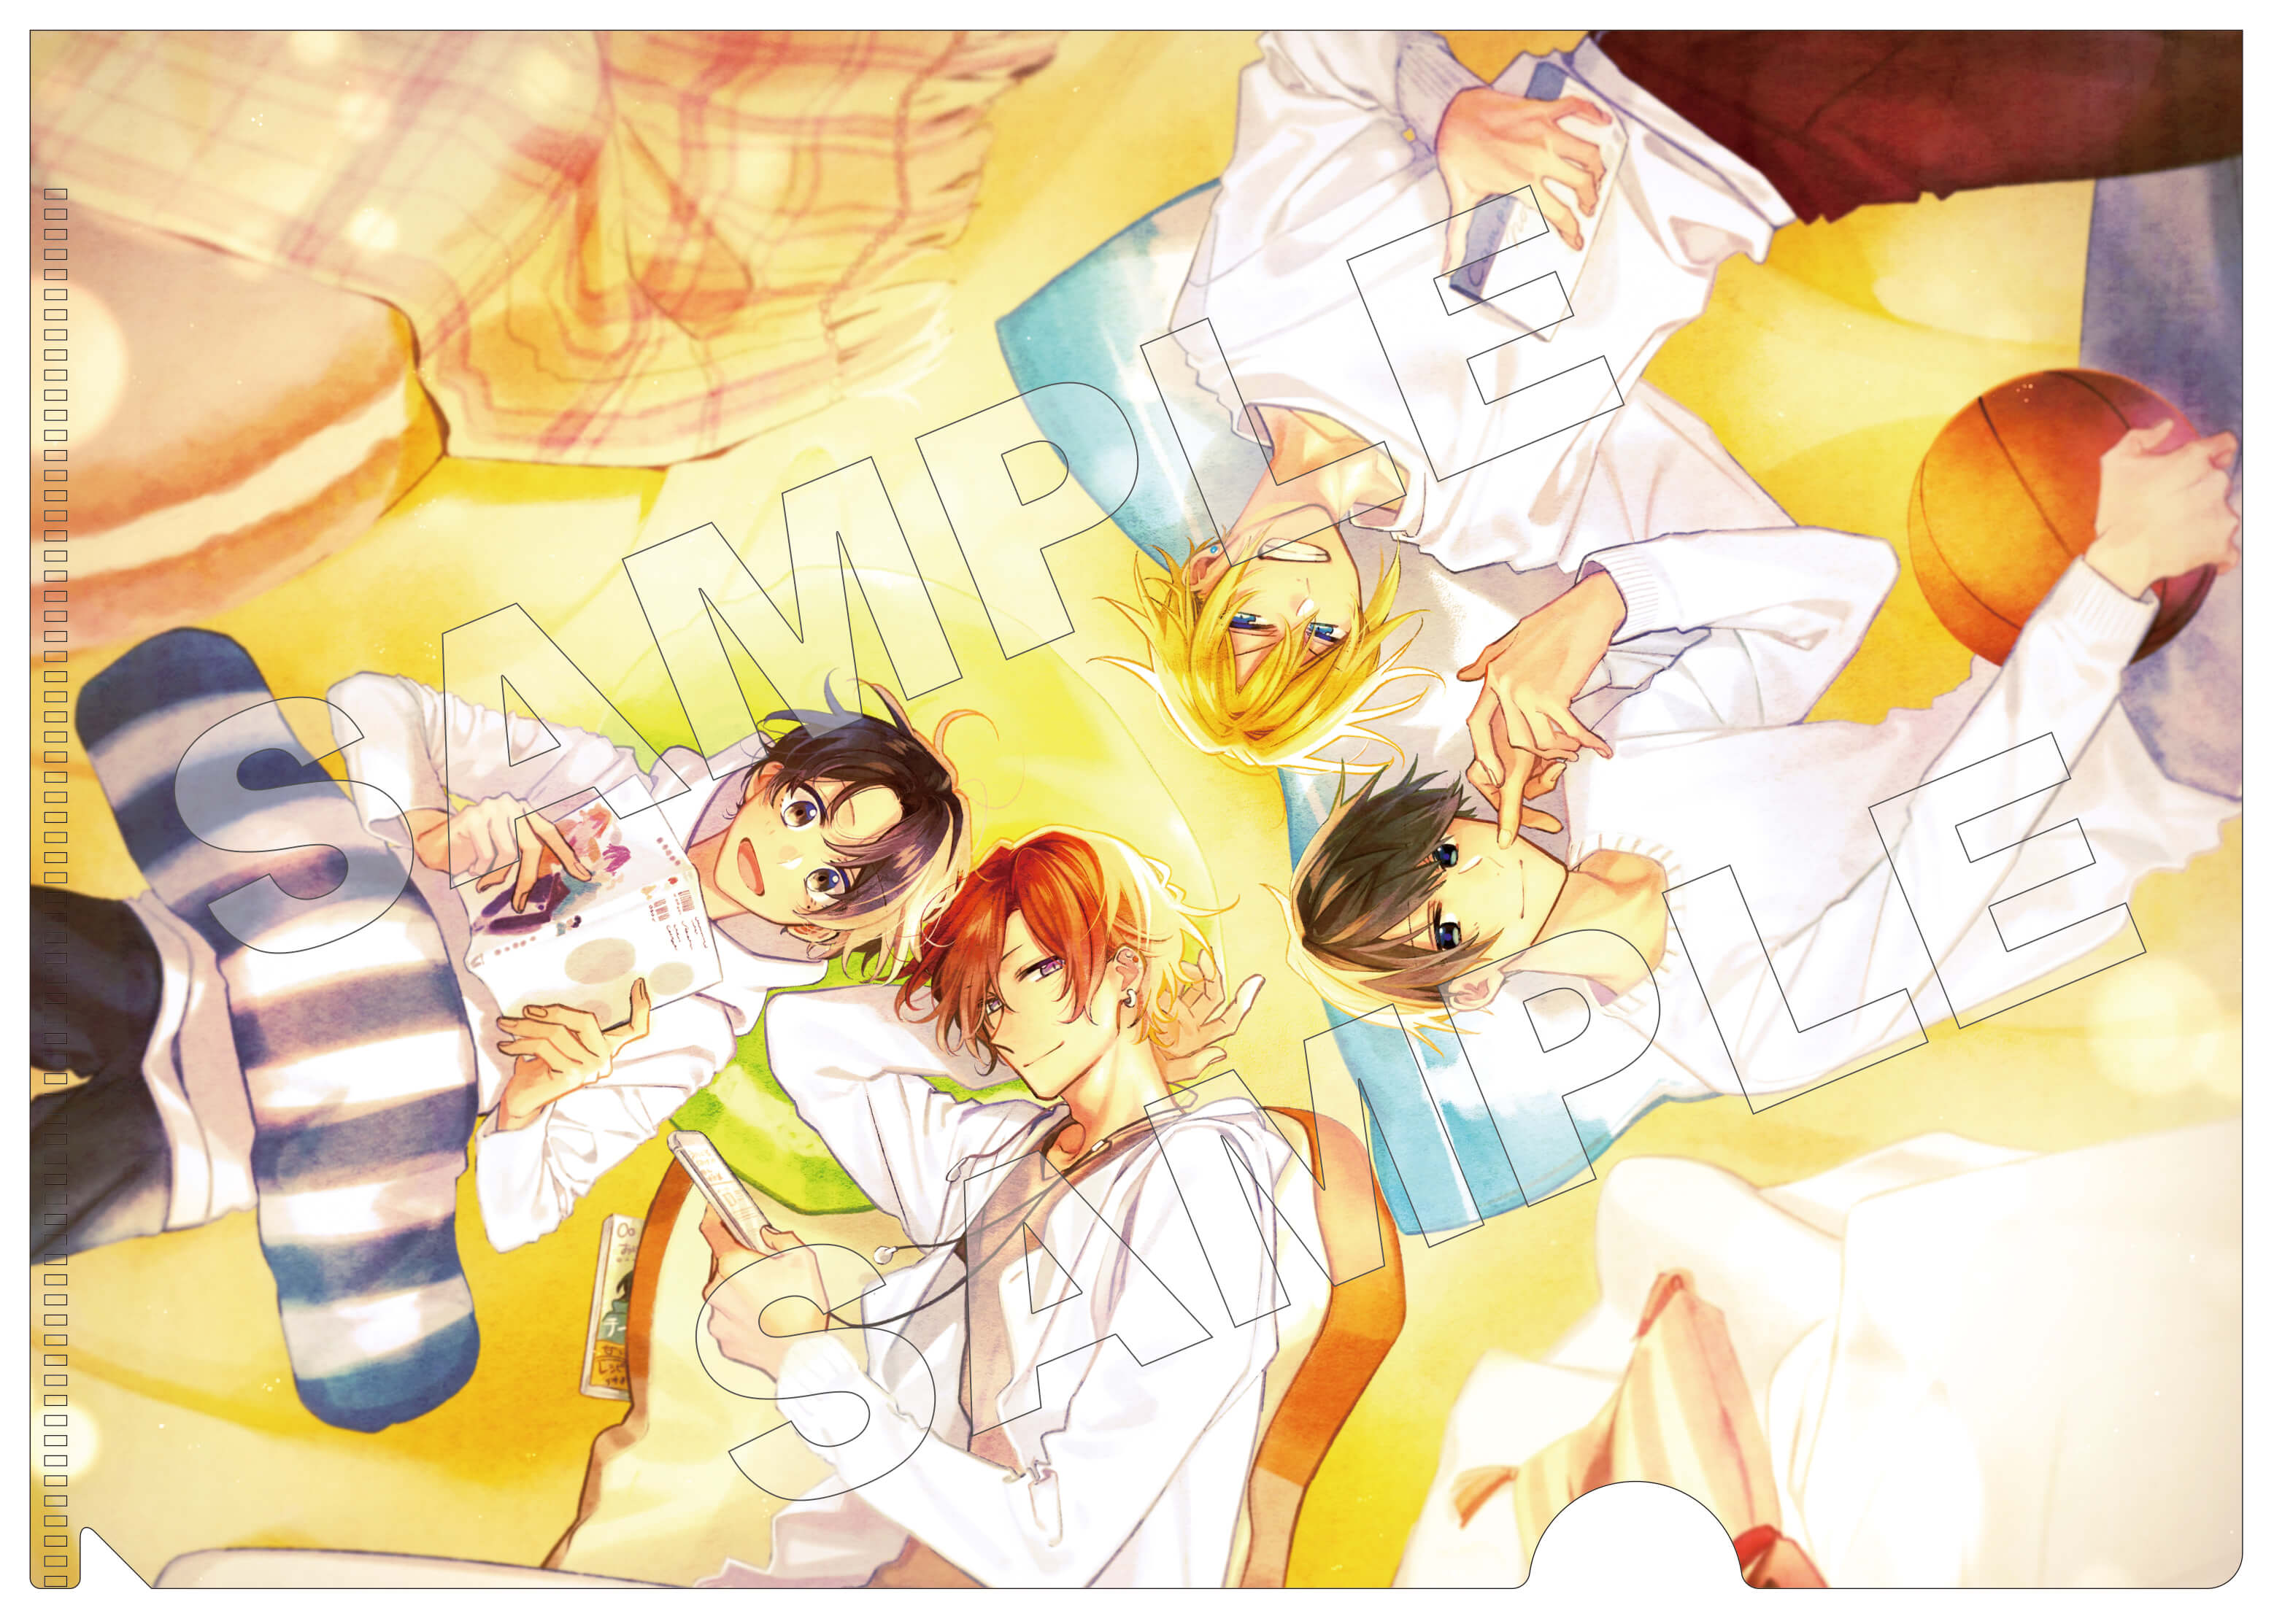 Sasaki and Miyano Anime Series Character Song Single Cover Illustration  Released  MOSHI MOSHI NIPPON  もしもしにっぽん